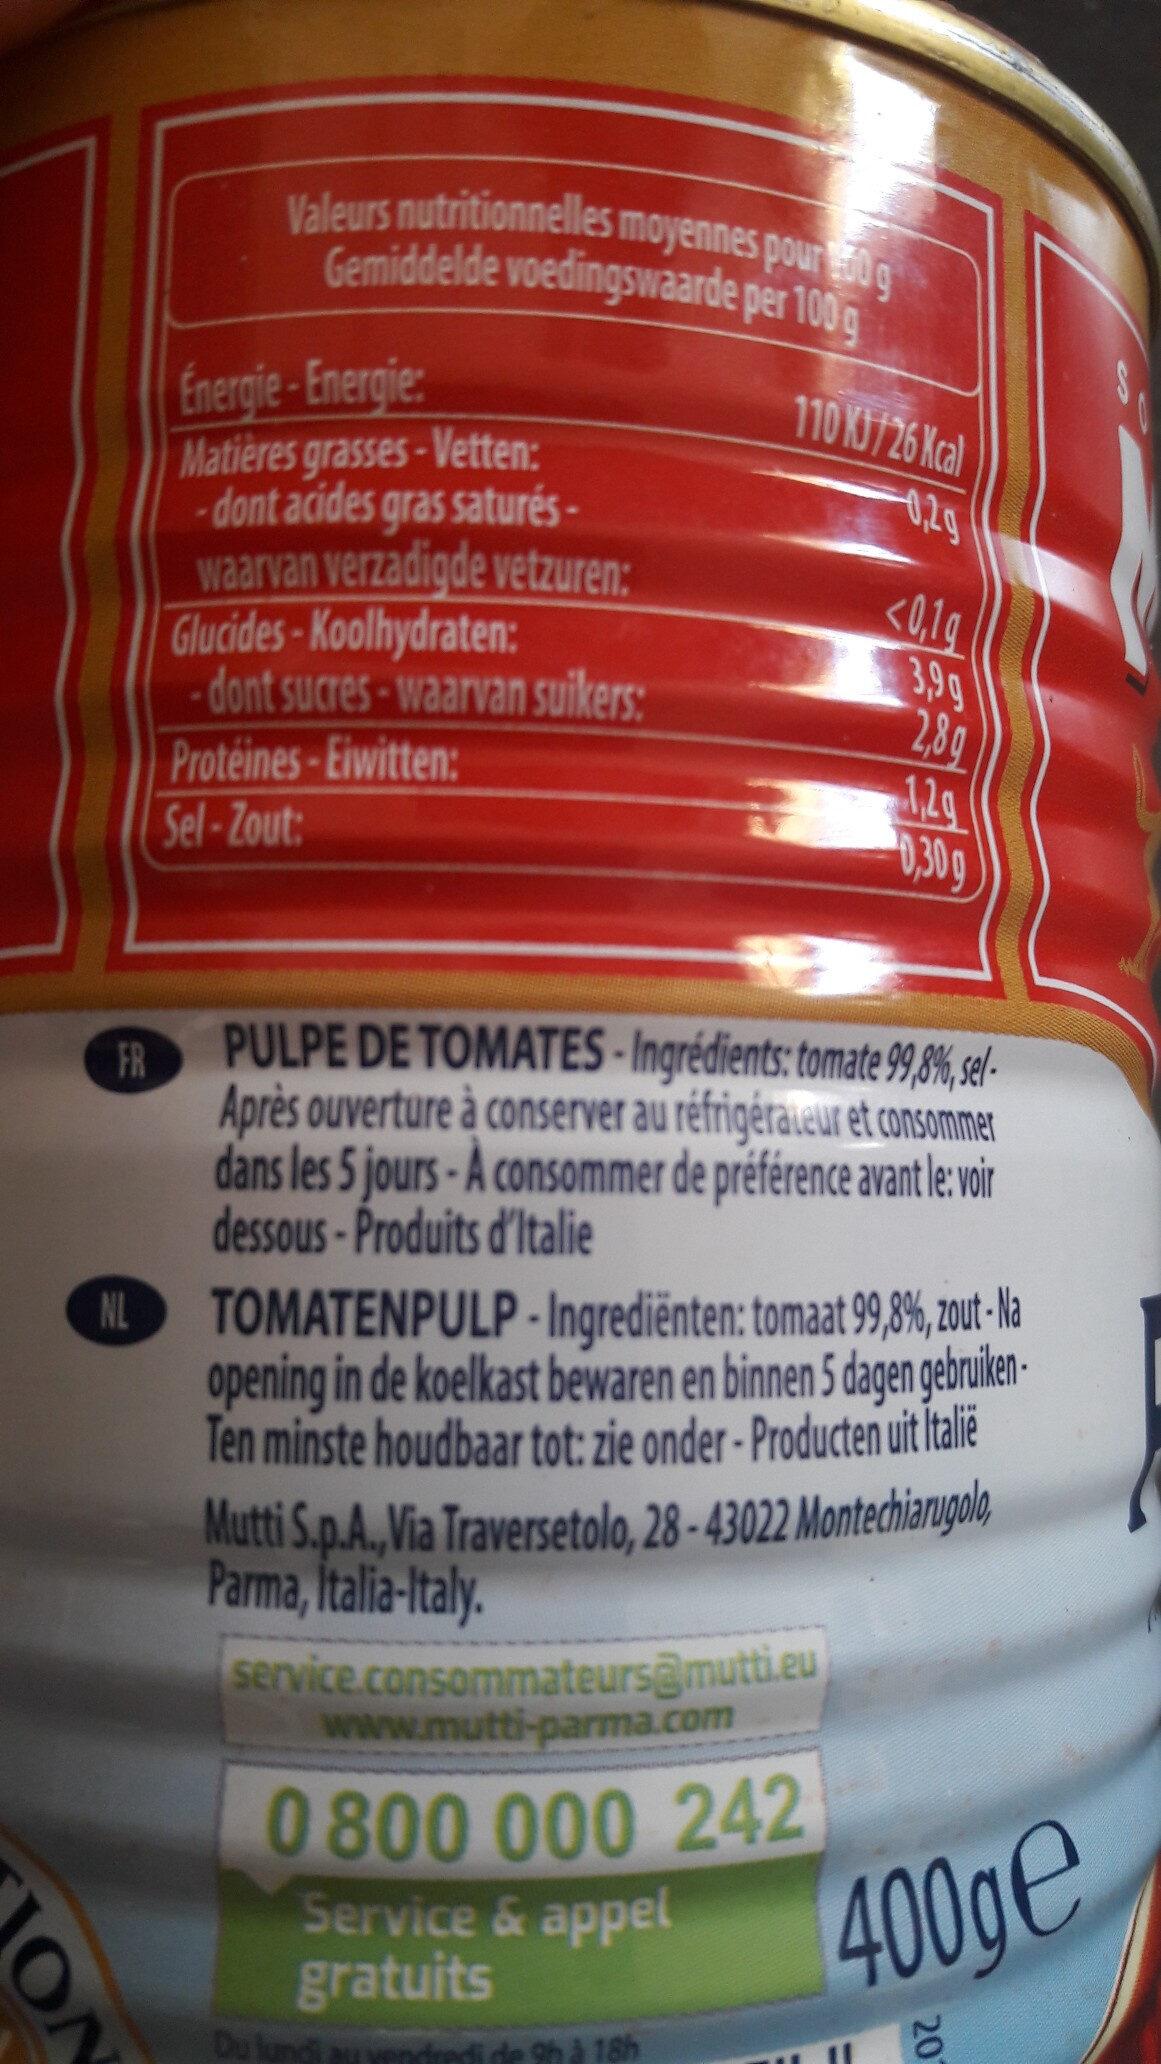 Polpa tomatenfruchtfleisch - Información nutricional - fr